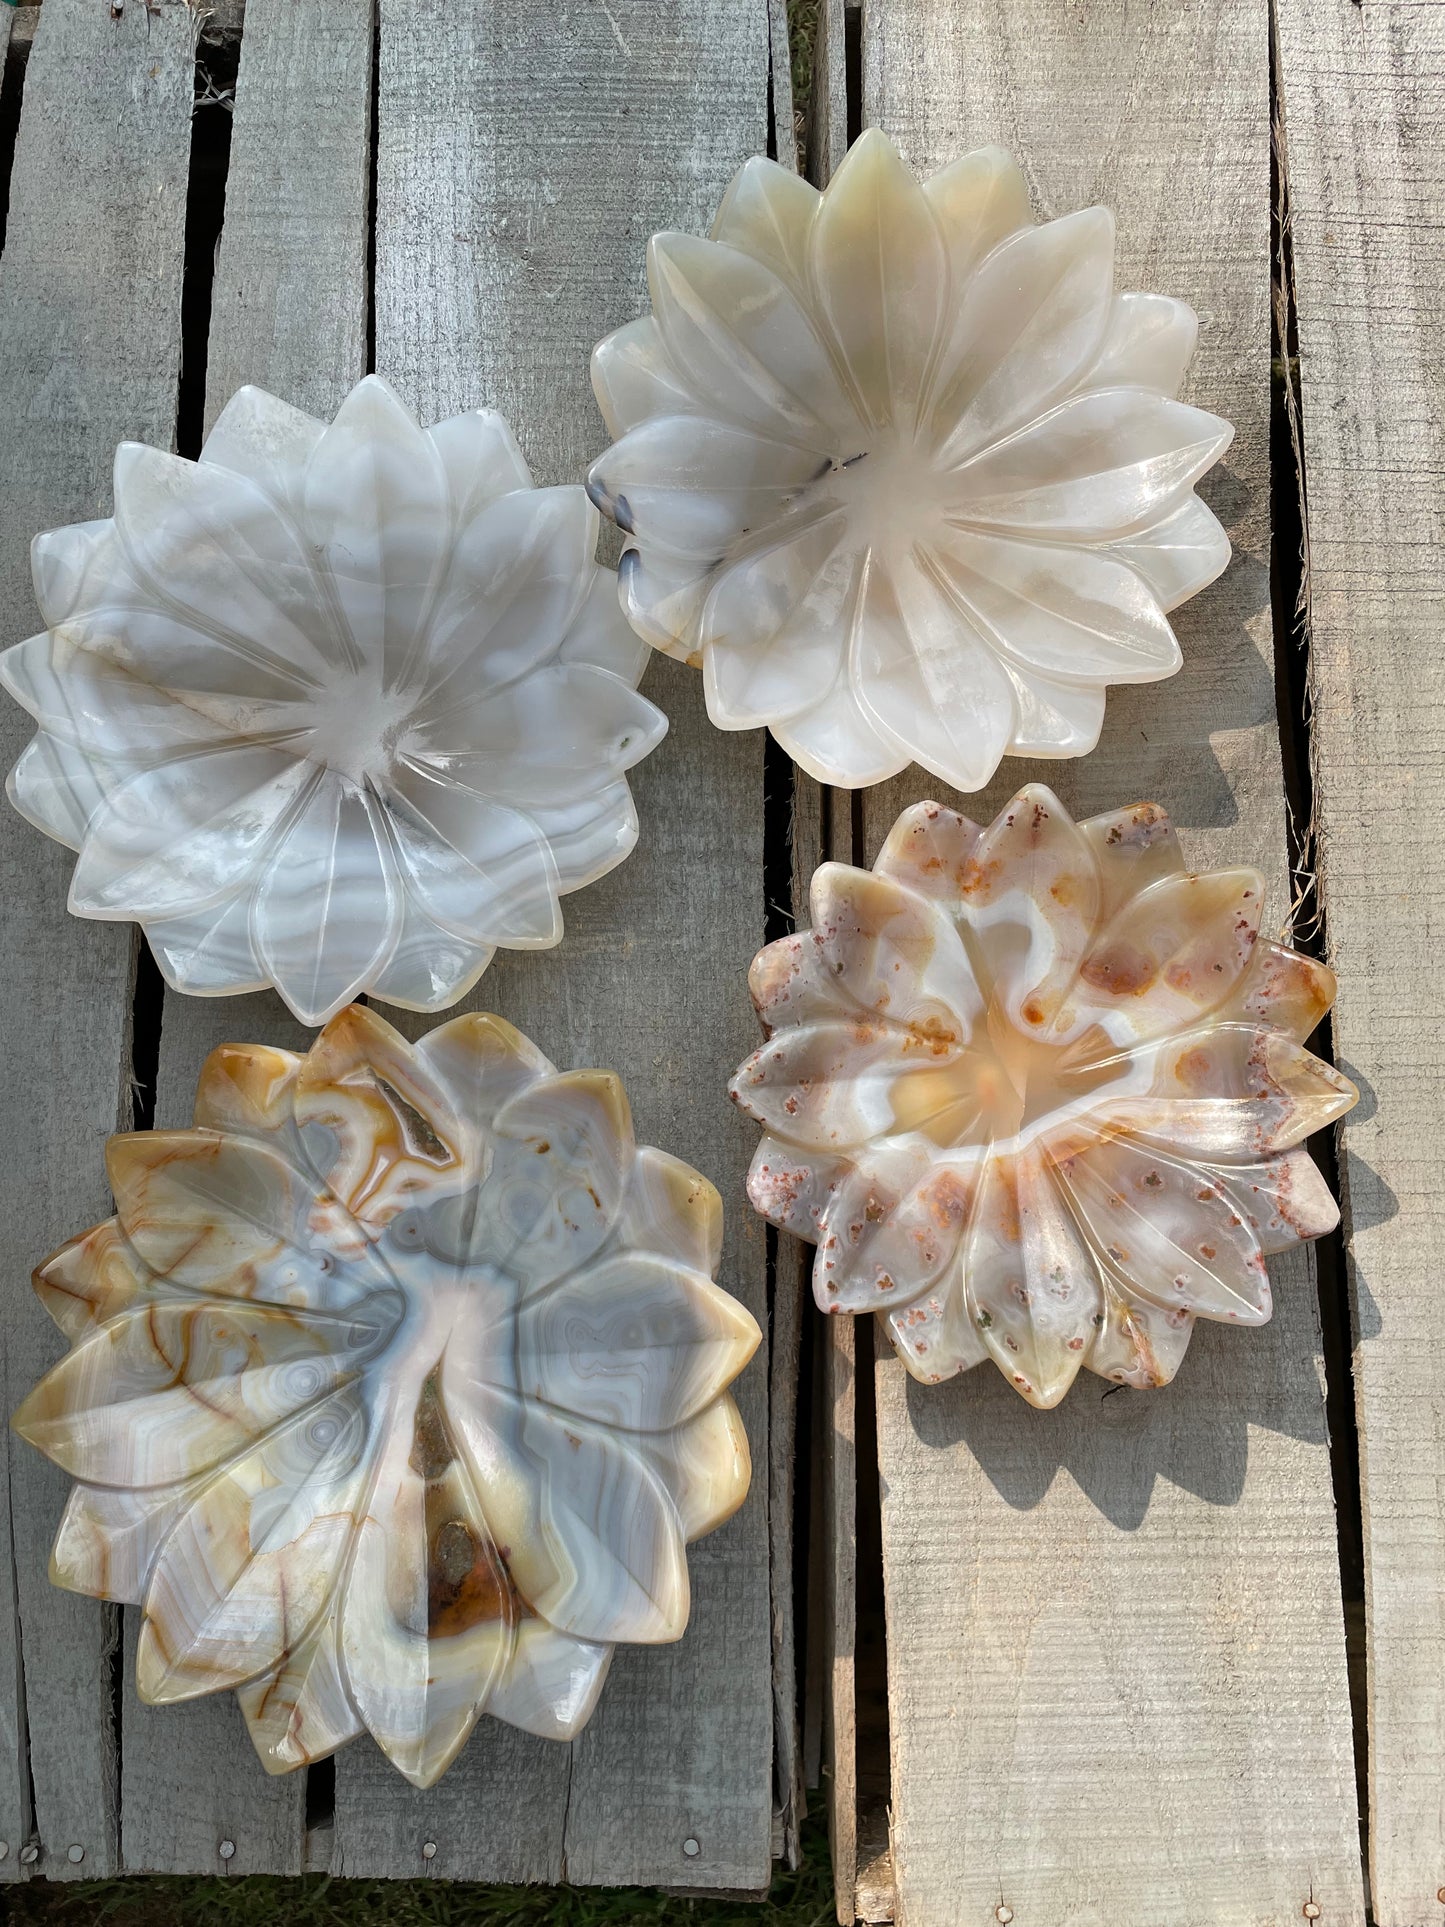 Carnelian bowls in lotus shape